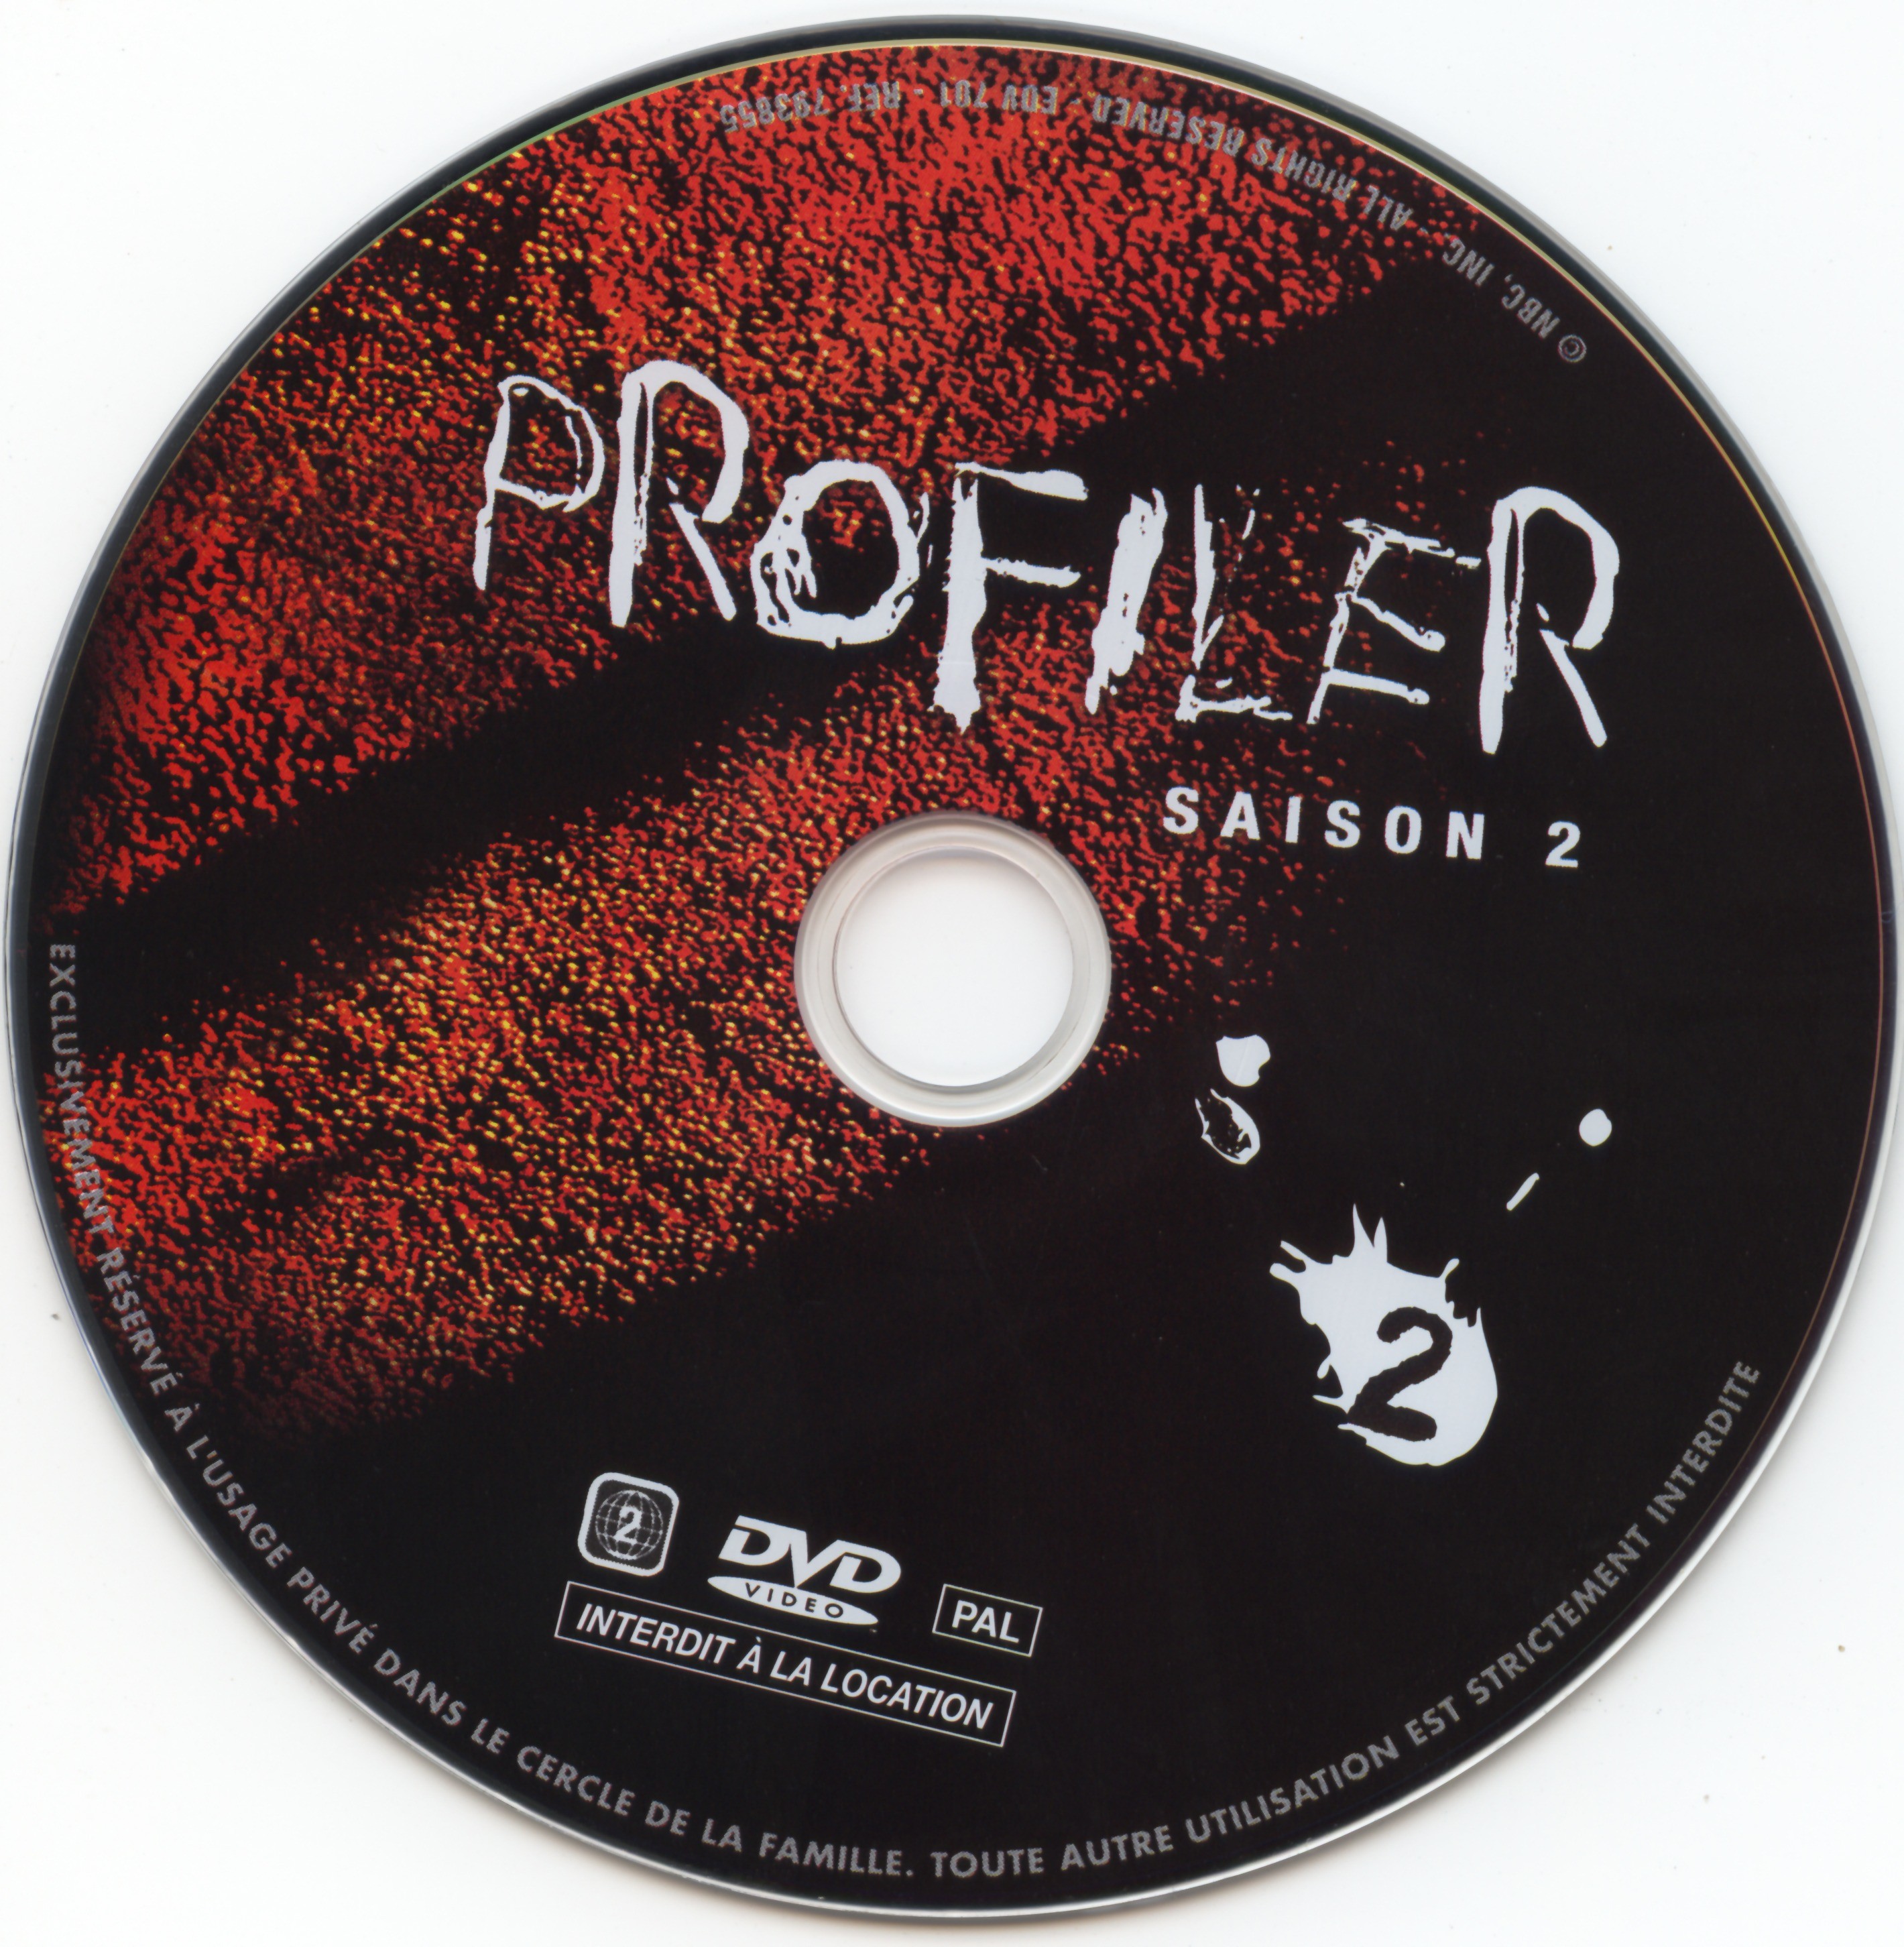 Profiler saison 2 DVD 2